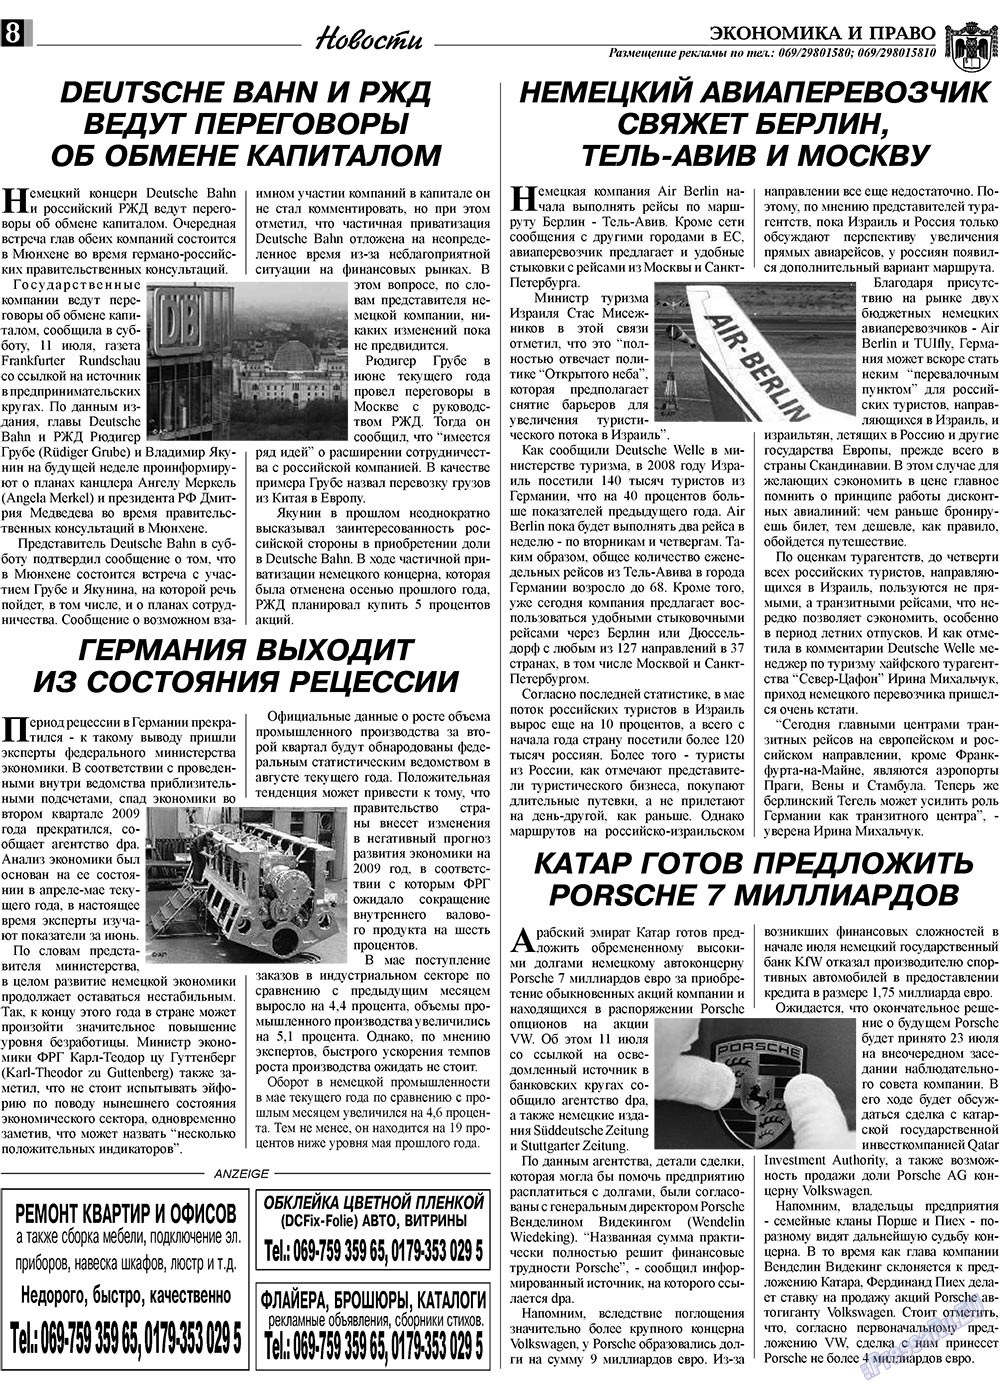 Экономика и право, газета. 2009 №8 стр.8